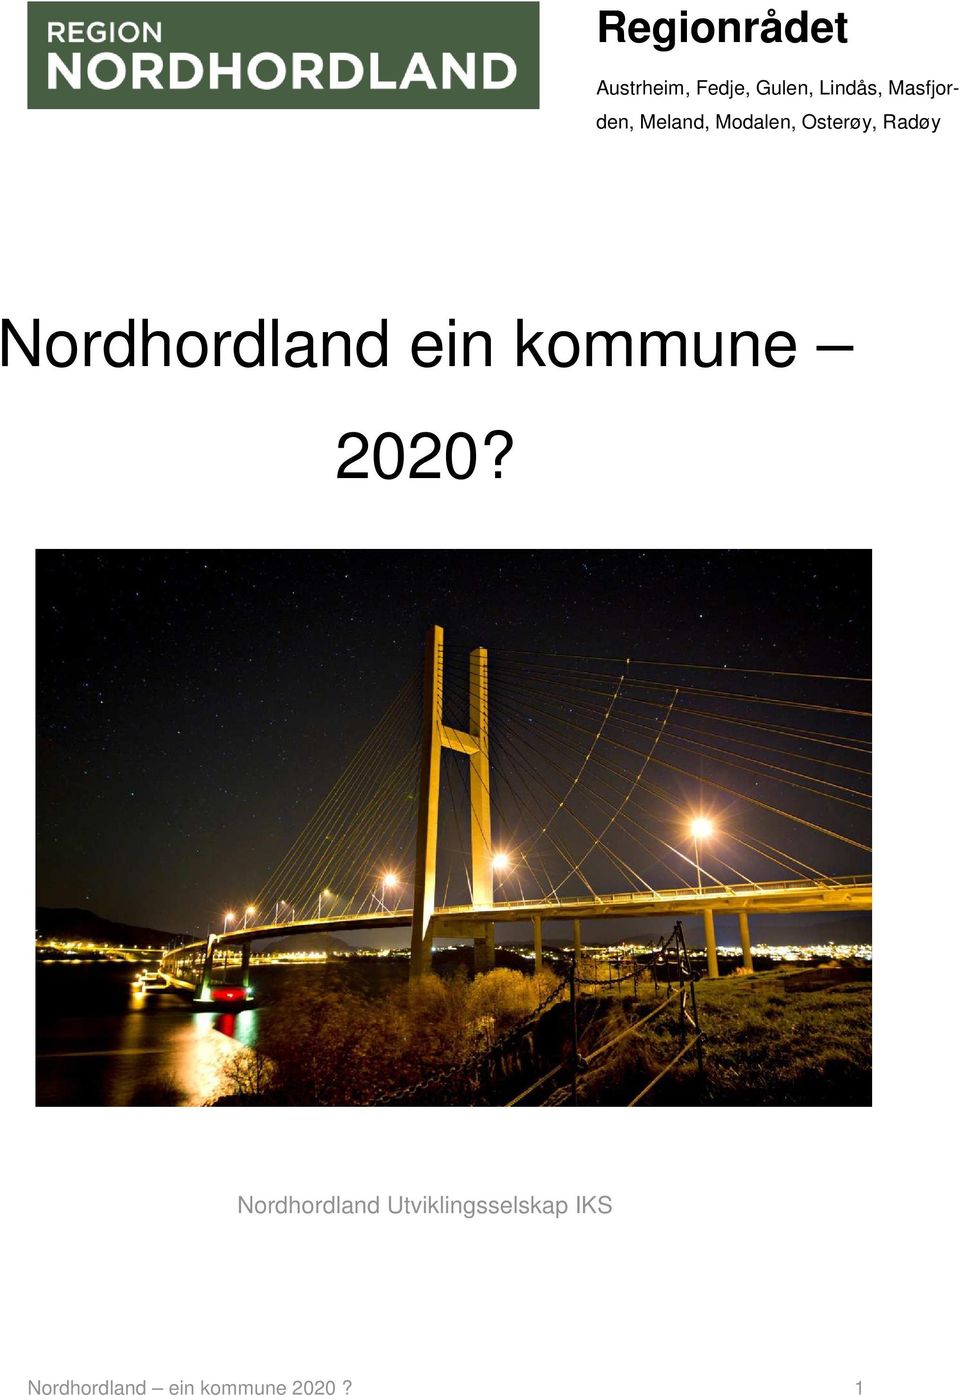 Nordhordland ein kommune 2020?